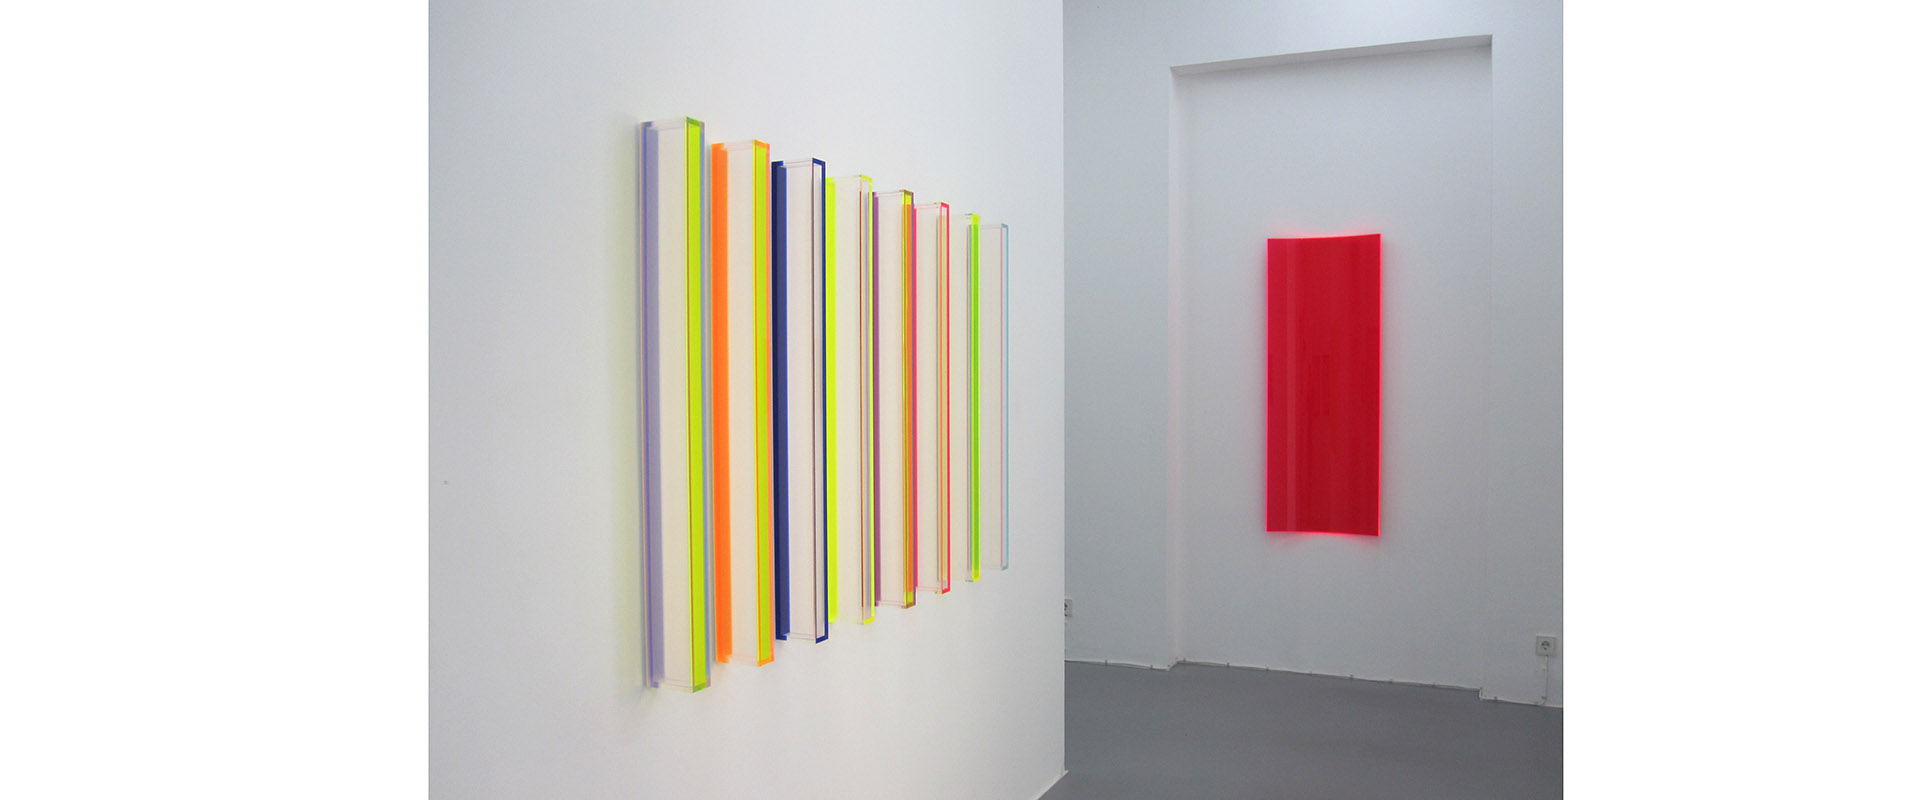 Ausstellungsansicht "KUNSTSTOFF", Galerie Renate Bender 2015